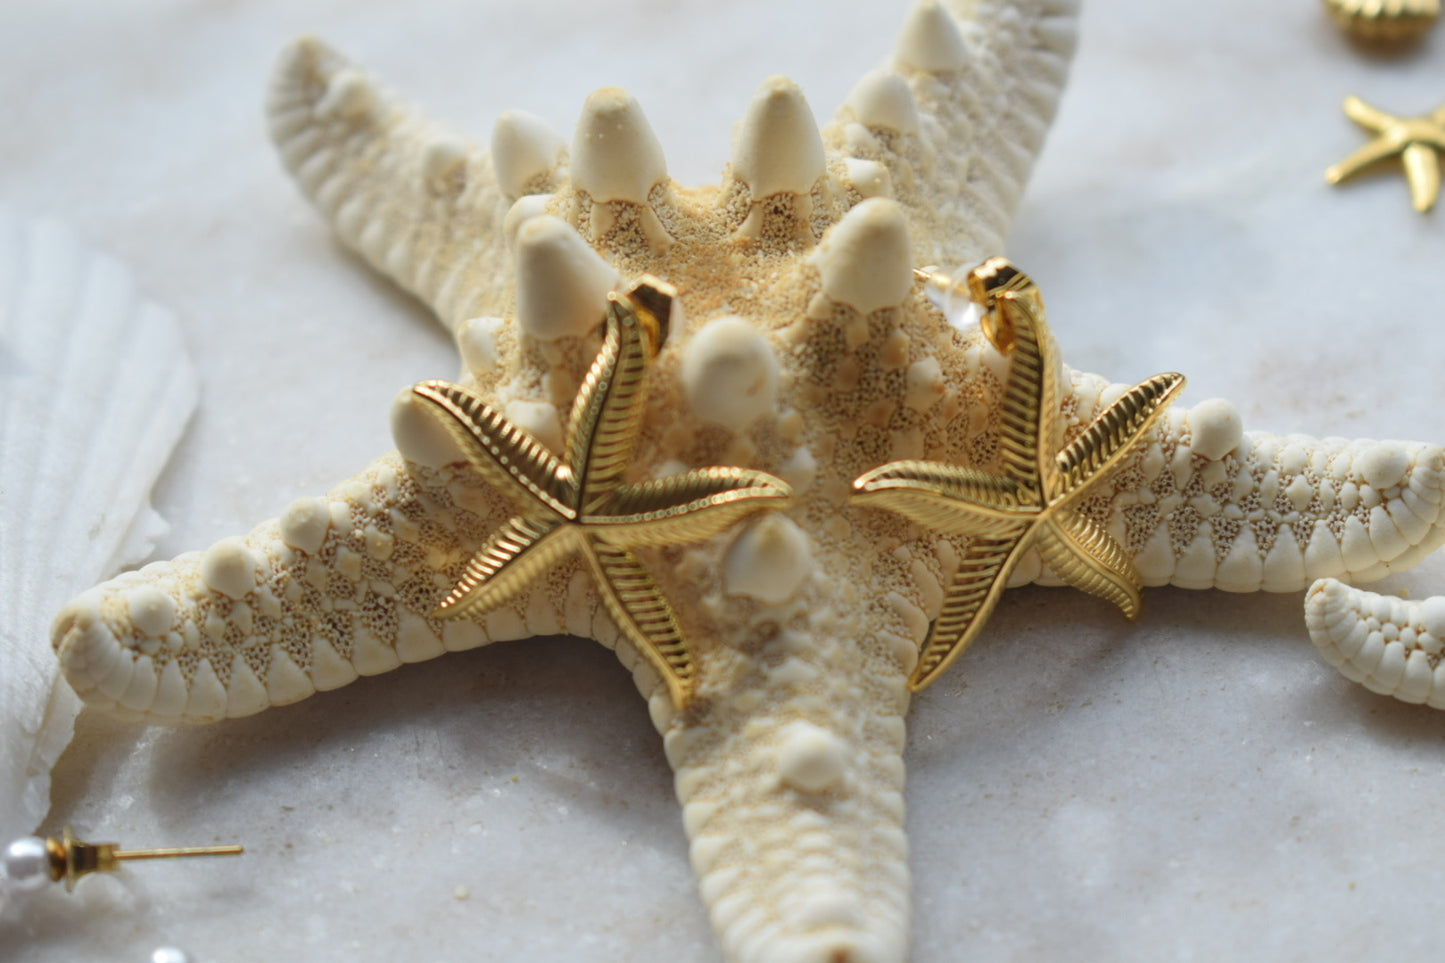 Starfish Oorbellen Goud